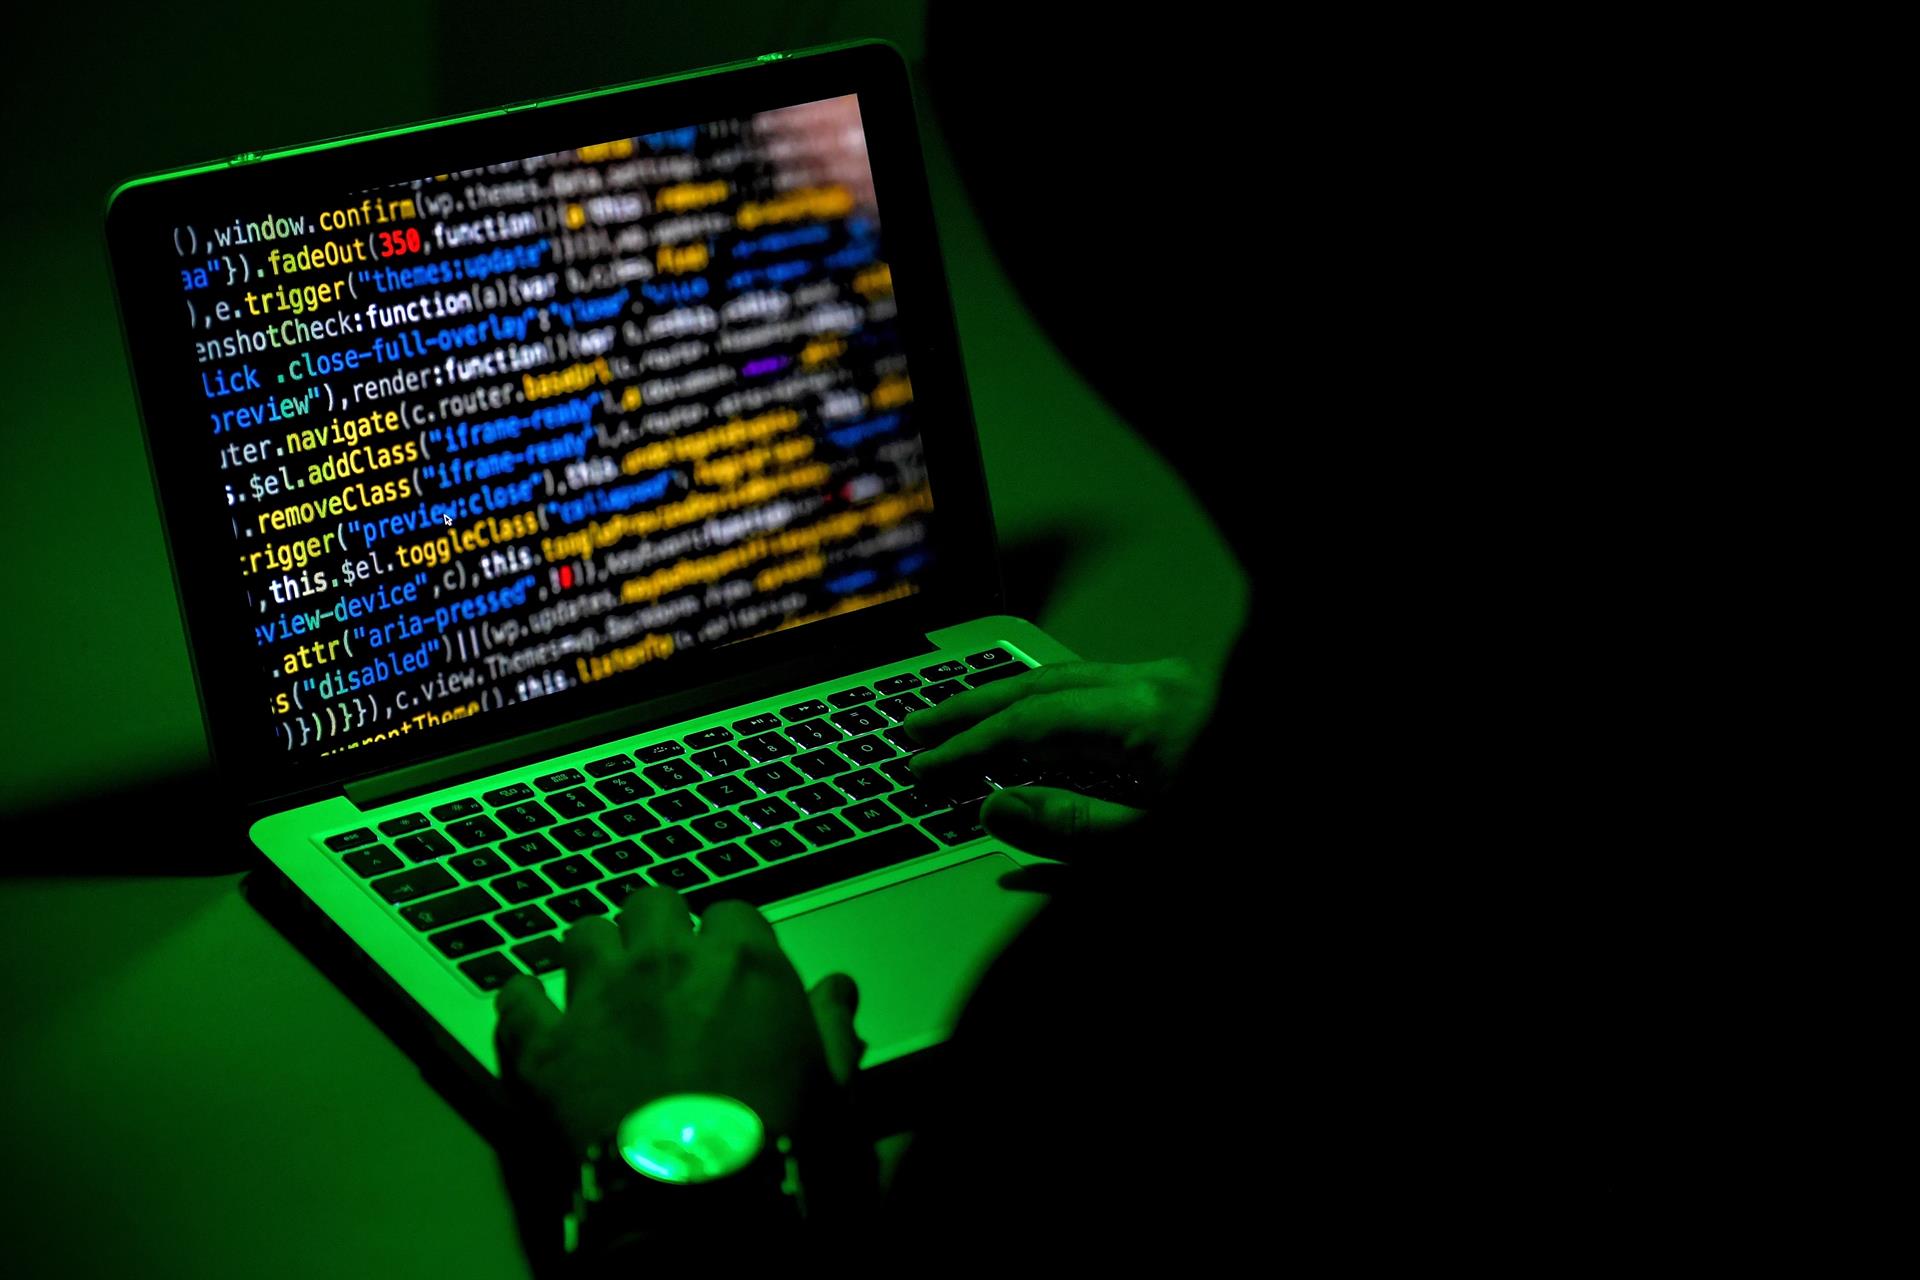 EE.UU. ofrece 15 millones por información sobre piratas informáticos Conti